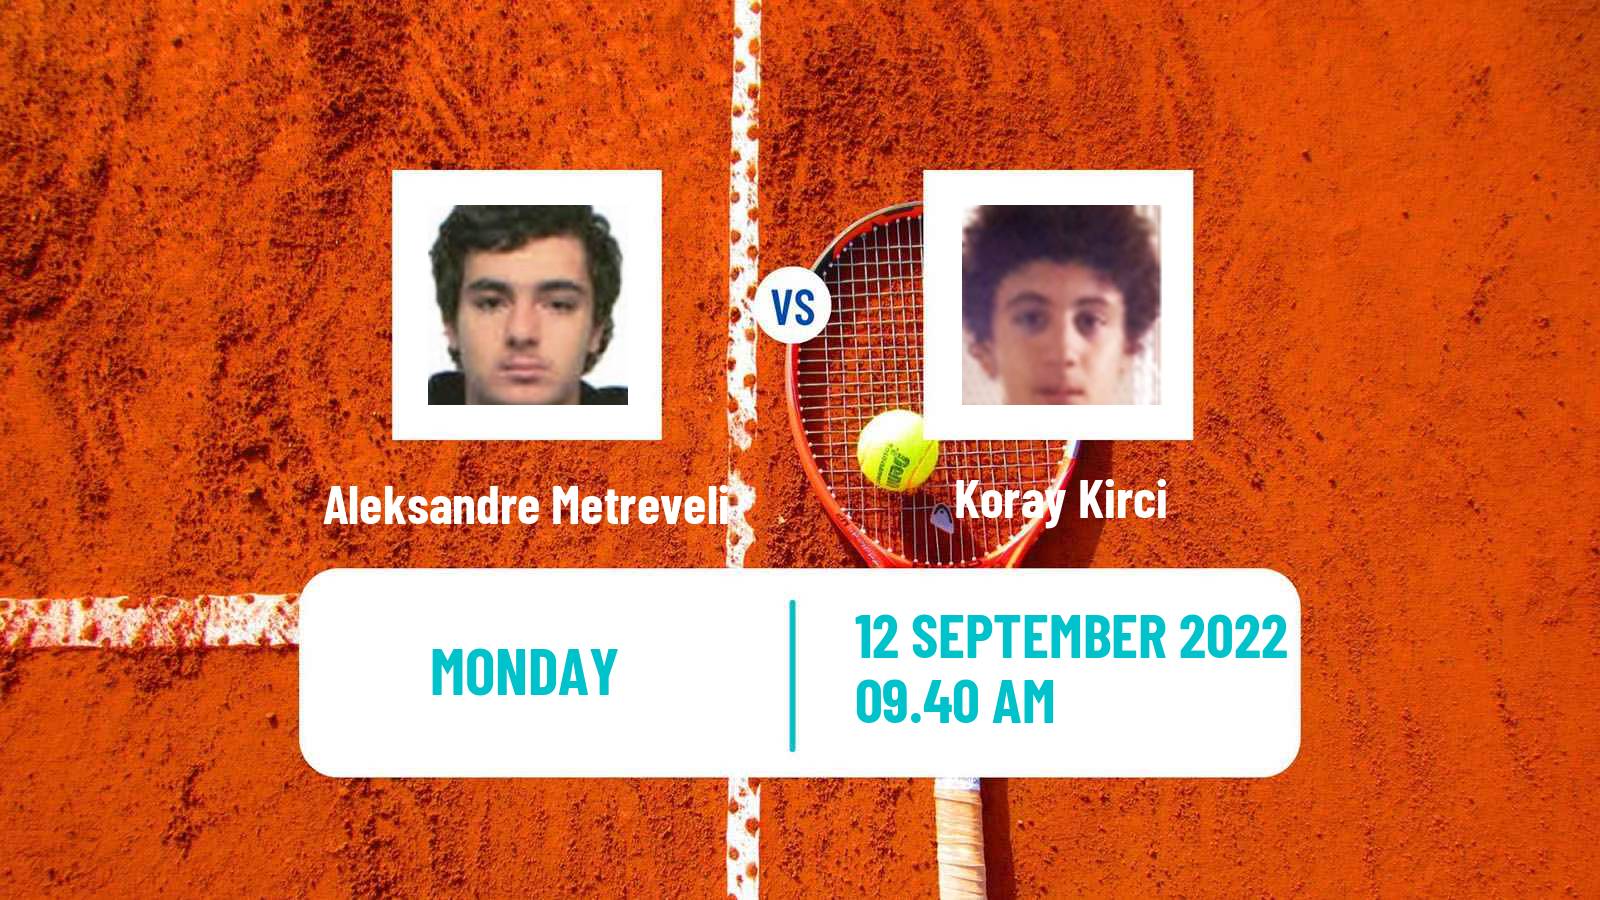 Tennis ATP Challenger Aleksandre Metreveli - Koray Kirci